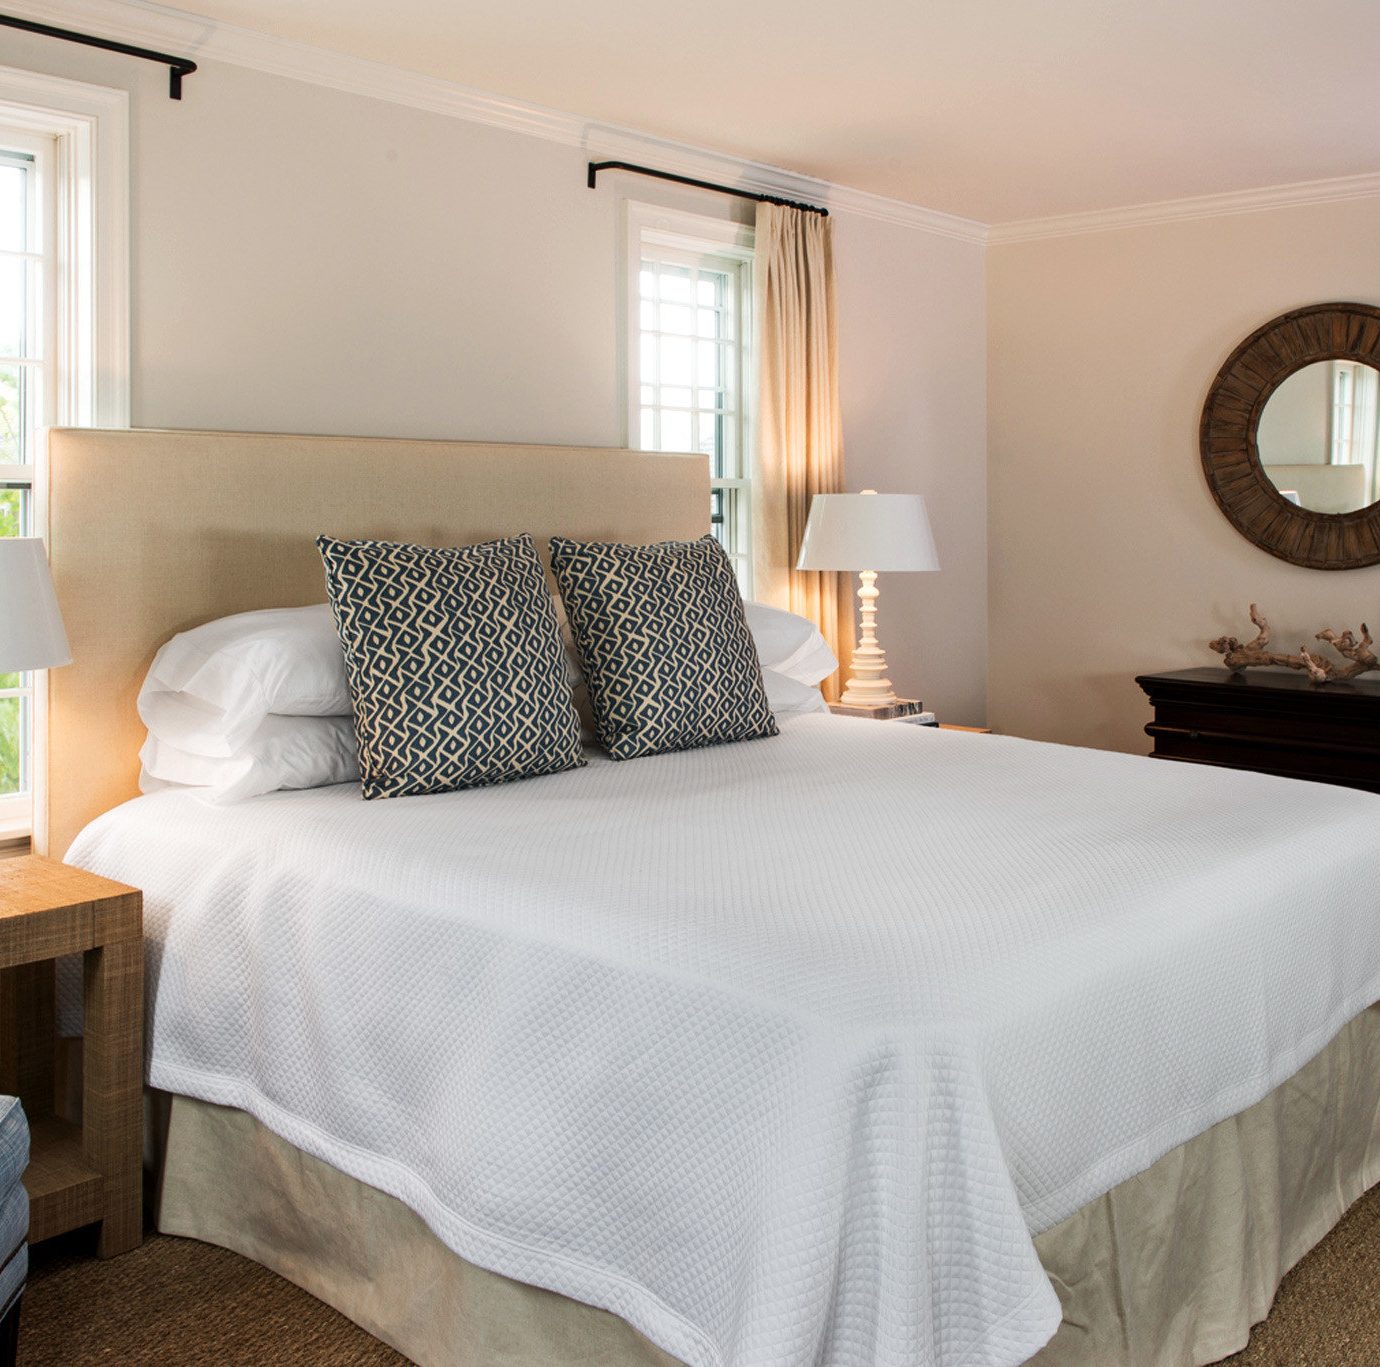 Adult-only B&B Bedroom Boutique Elegant property Suite cottage bed sheet